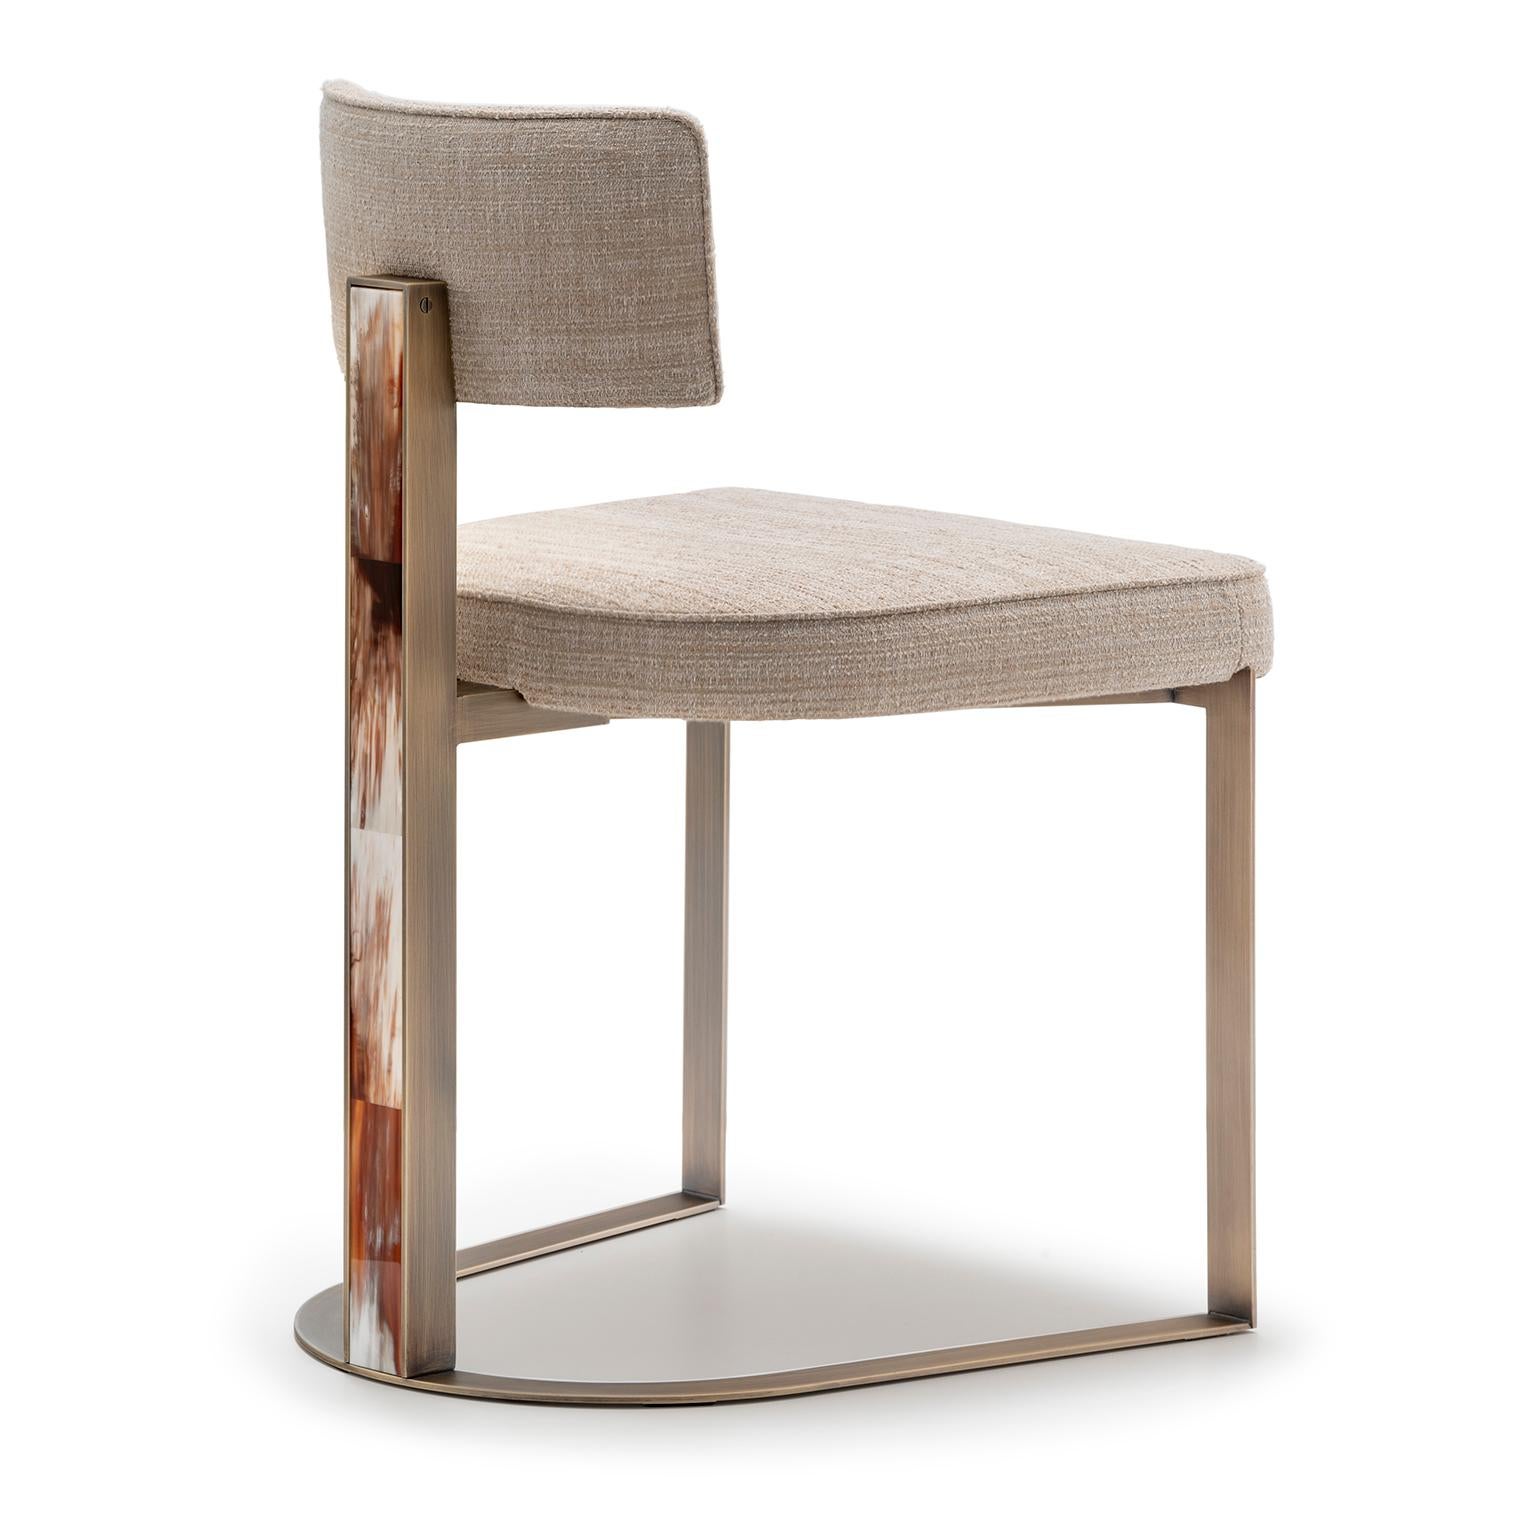 Der Sveva-Stuhl verfügt über eine Struktur aus brüniertem Metall mit klaren, geschwungenen Linien. Die handgefertigten Fliesen aus Corno Italiano mit glänzender Oberfläche verleihen dem Sveva-Stuhl eine besondere Note und setzen einen wahrhaft